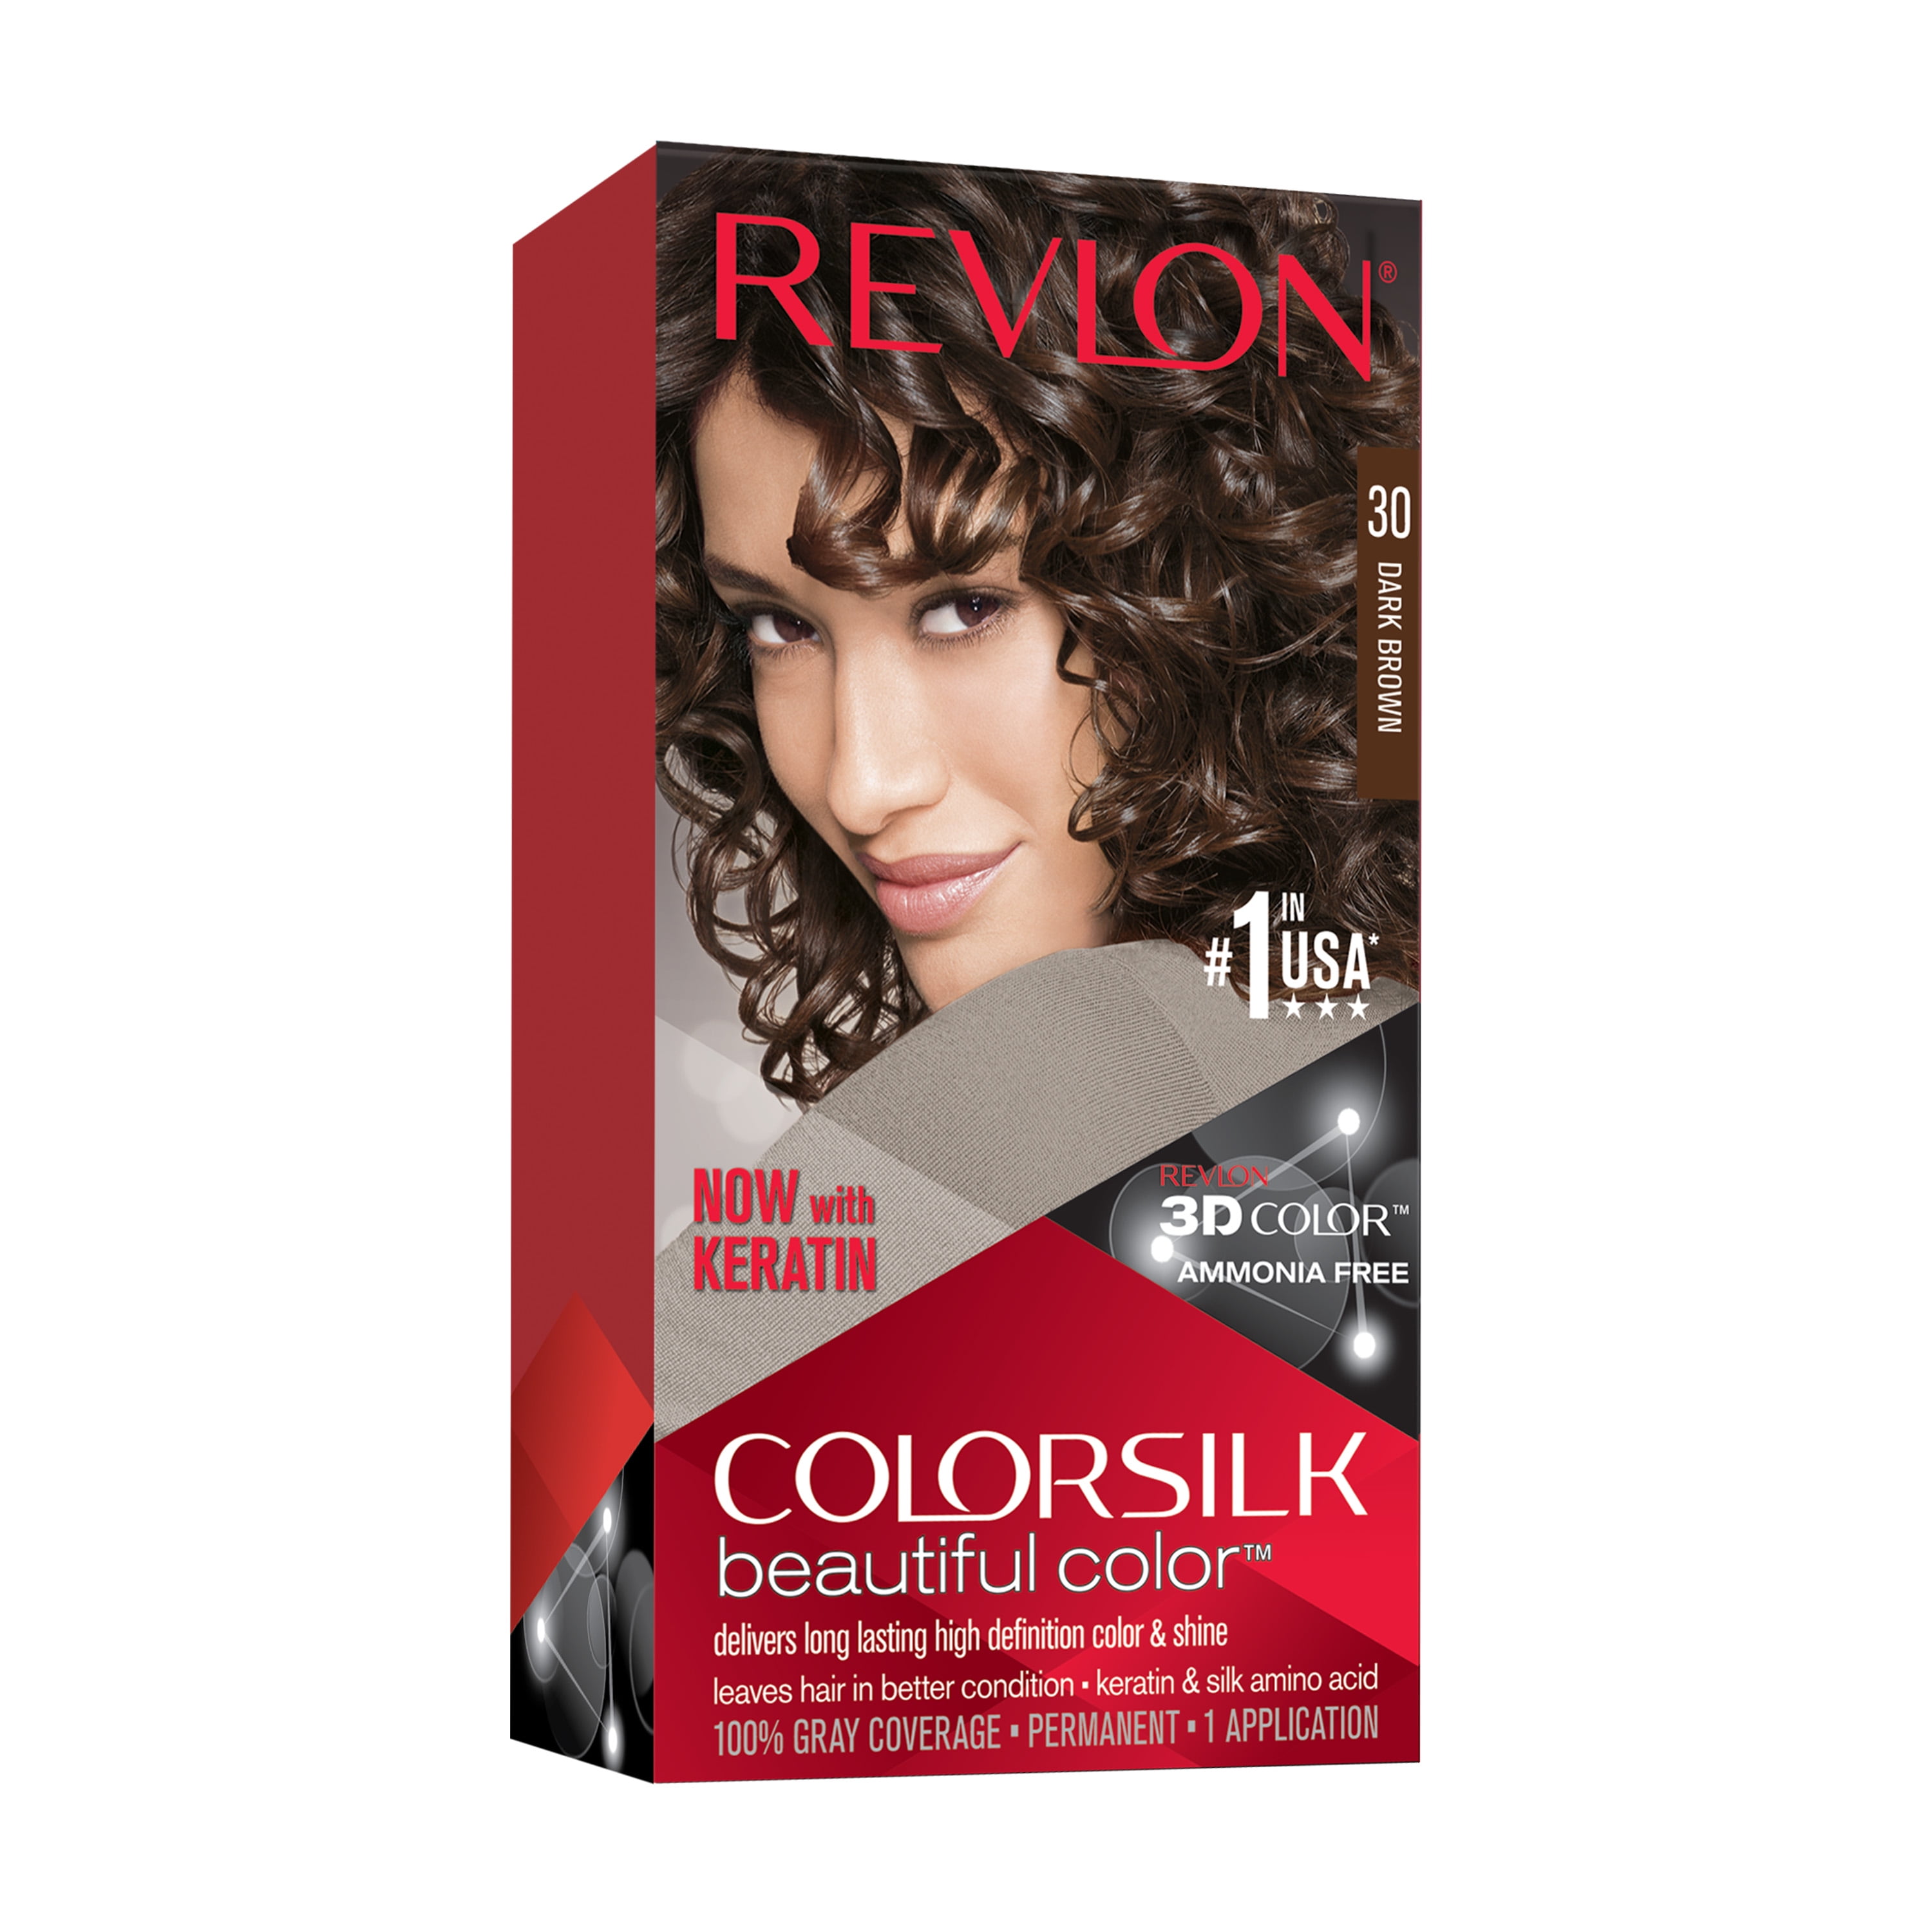 Revlon ColorSilk Beautiful Permanent Hair Color, 30 Dark Brown, 1 Count -  